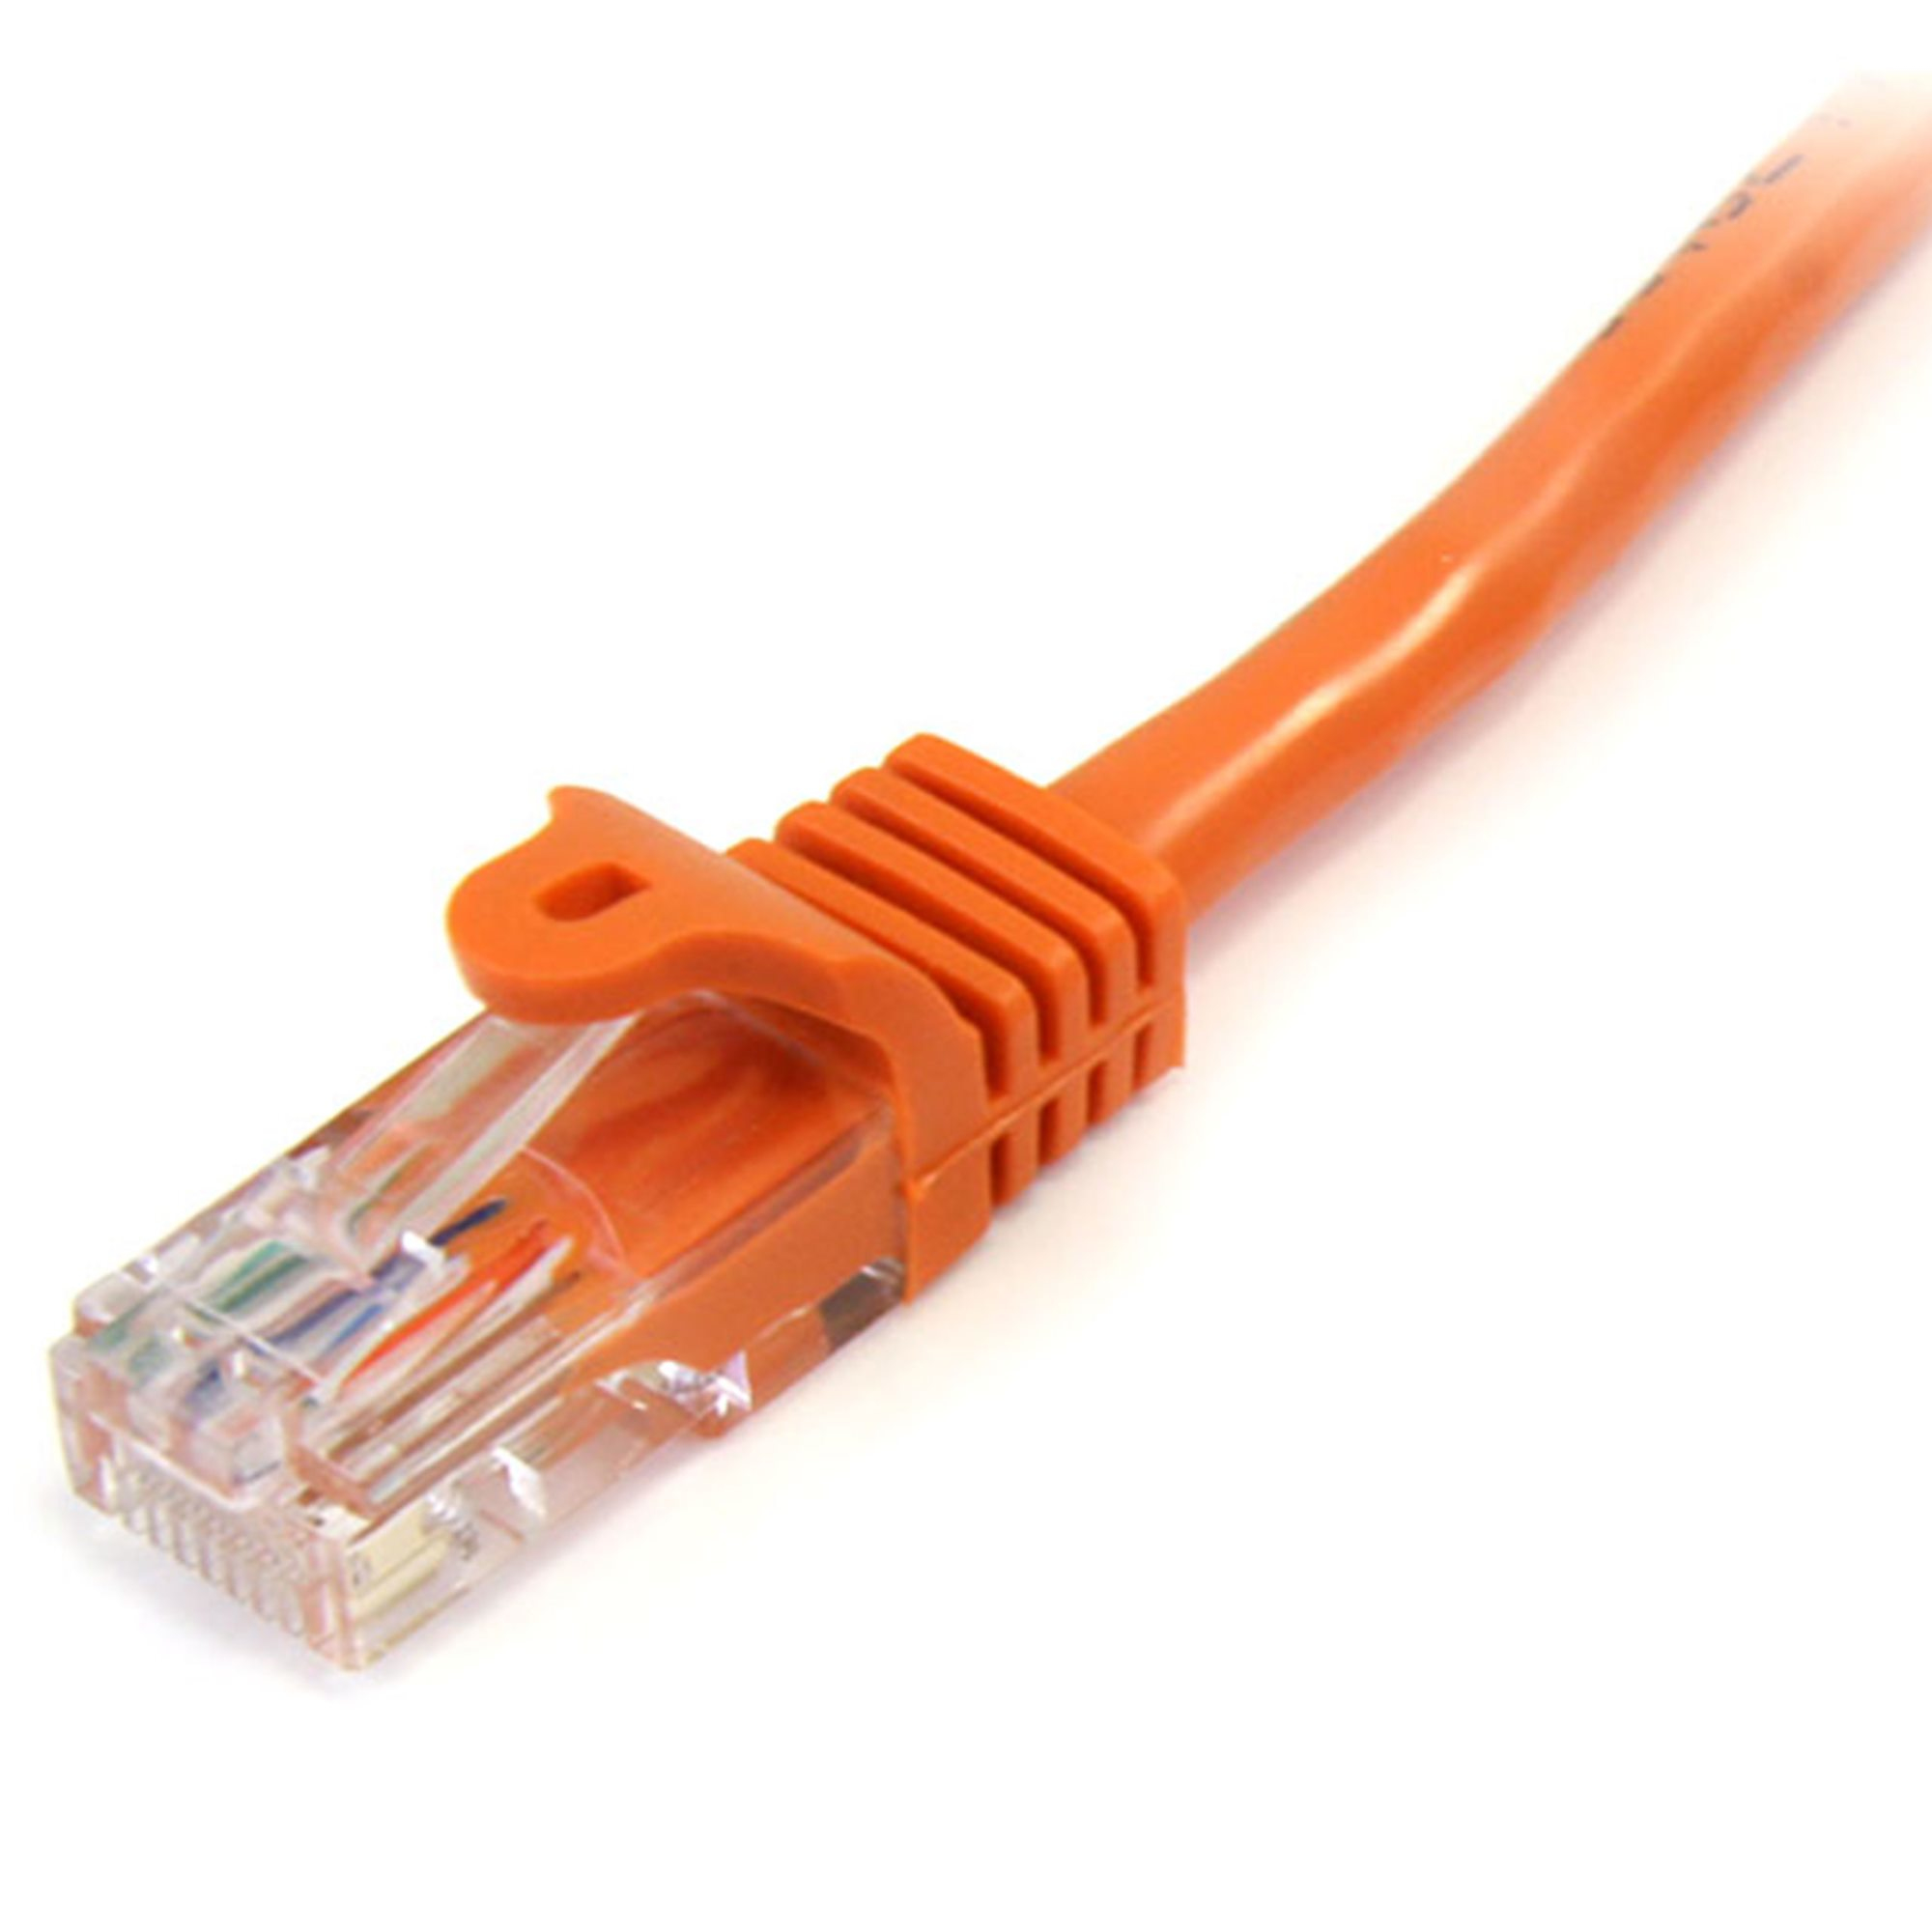 StarTech.com 0,5m Cat5e Ethernet Netzwerkkabel Snagless mit RJ45 - Cat 5e UTP Kabel - Orange - Patch-Kabel - RJ-45 (M)